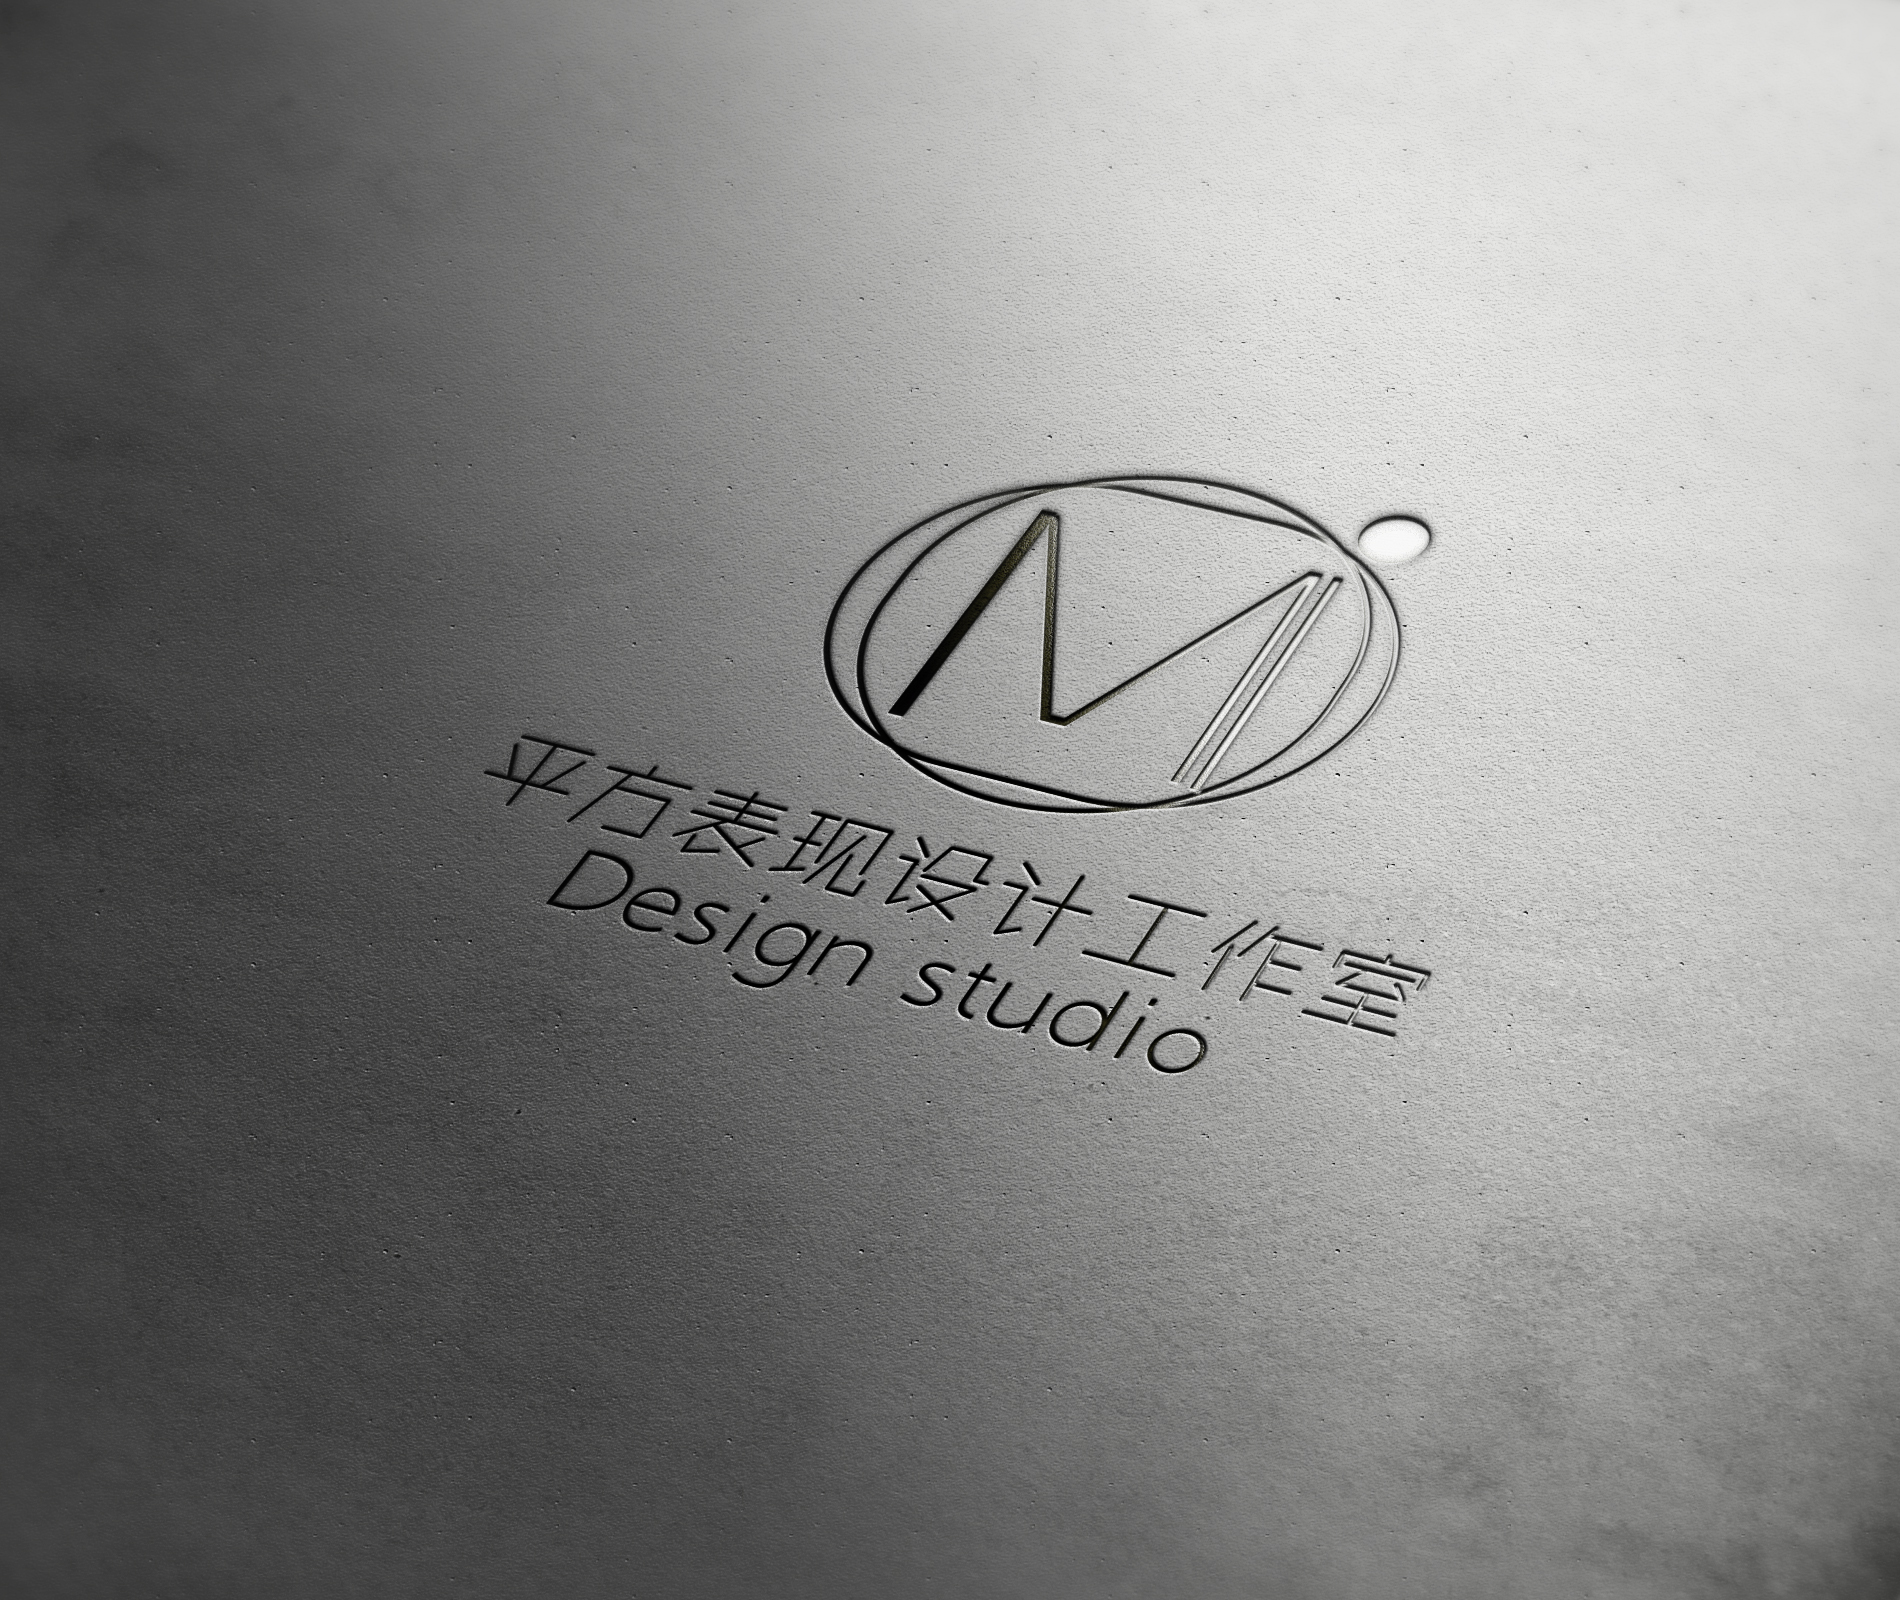 一个关于设计工作室的logo 